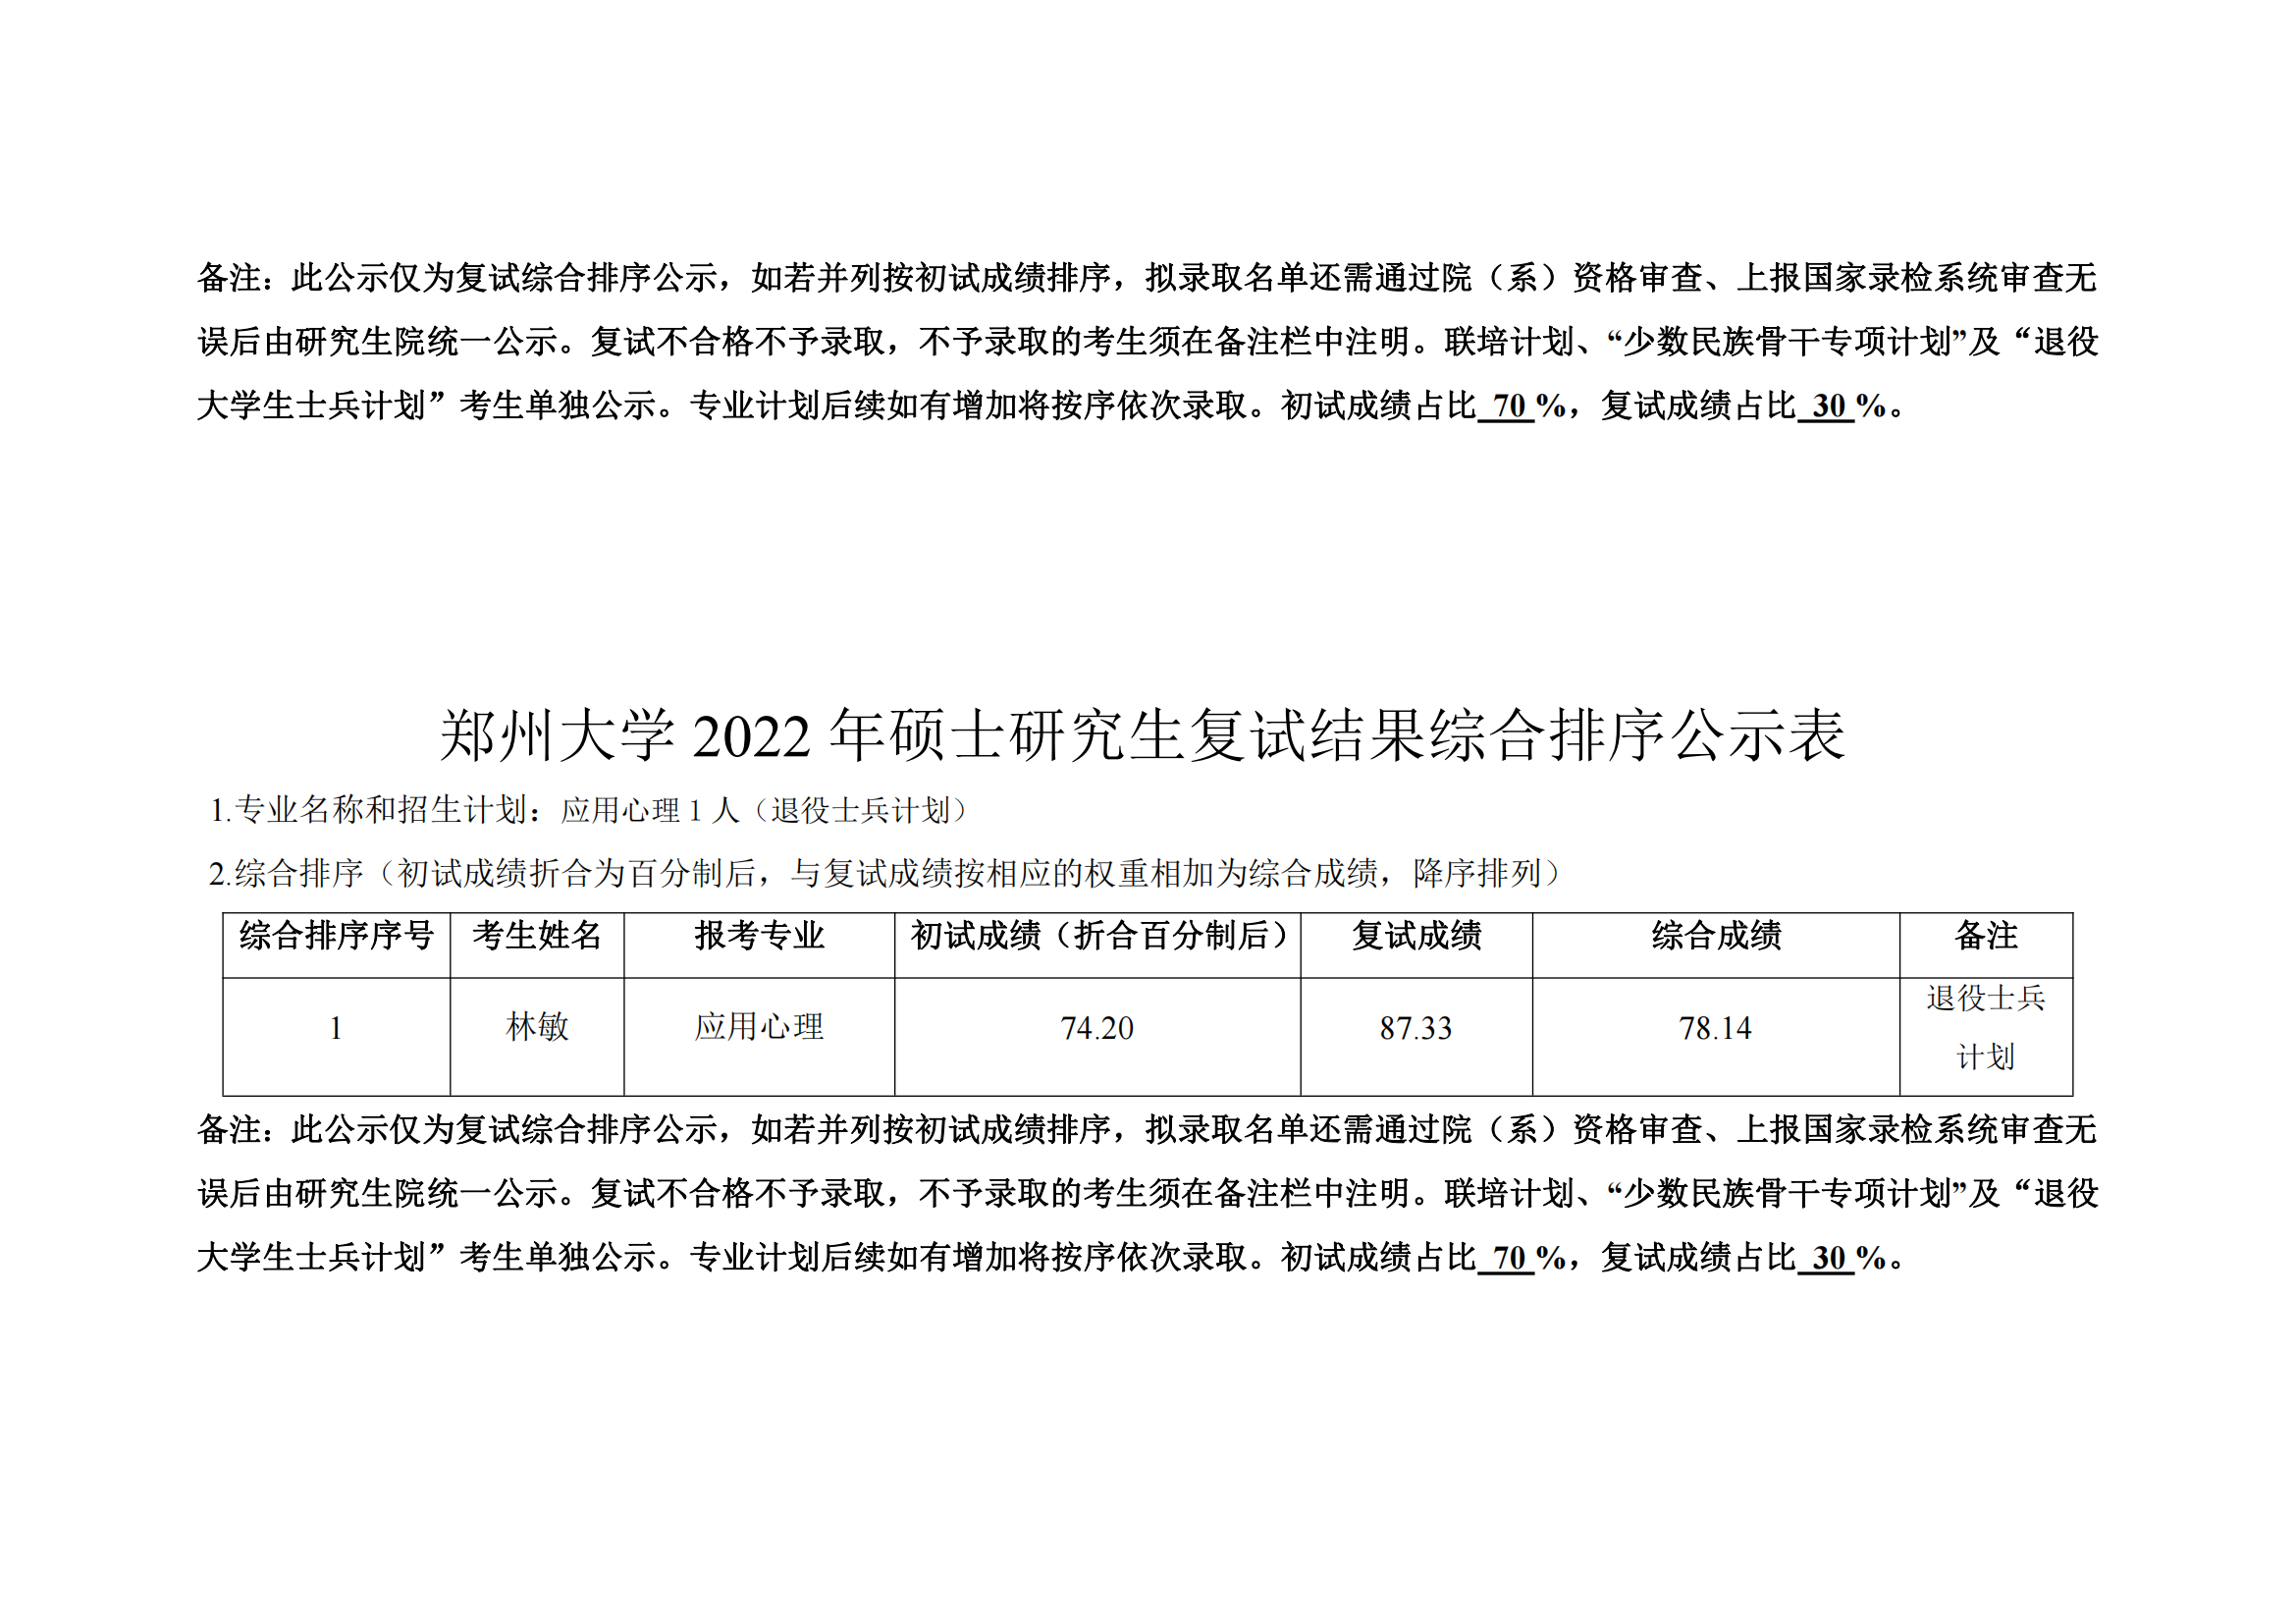 郑州大学教育学院2022年硕士研究生复试结果综合排序公示表_10.png